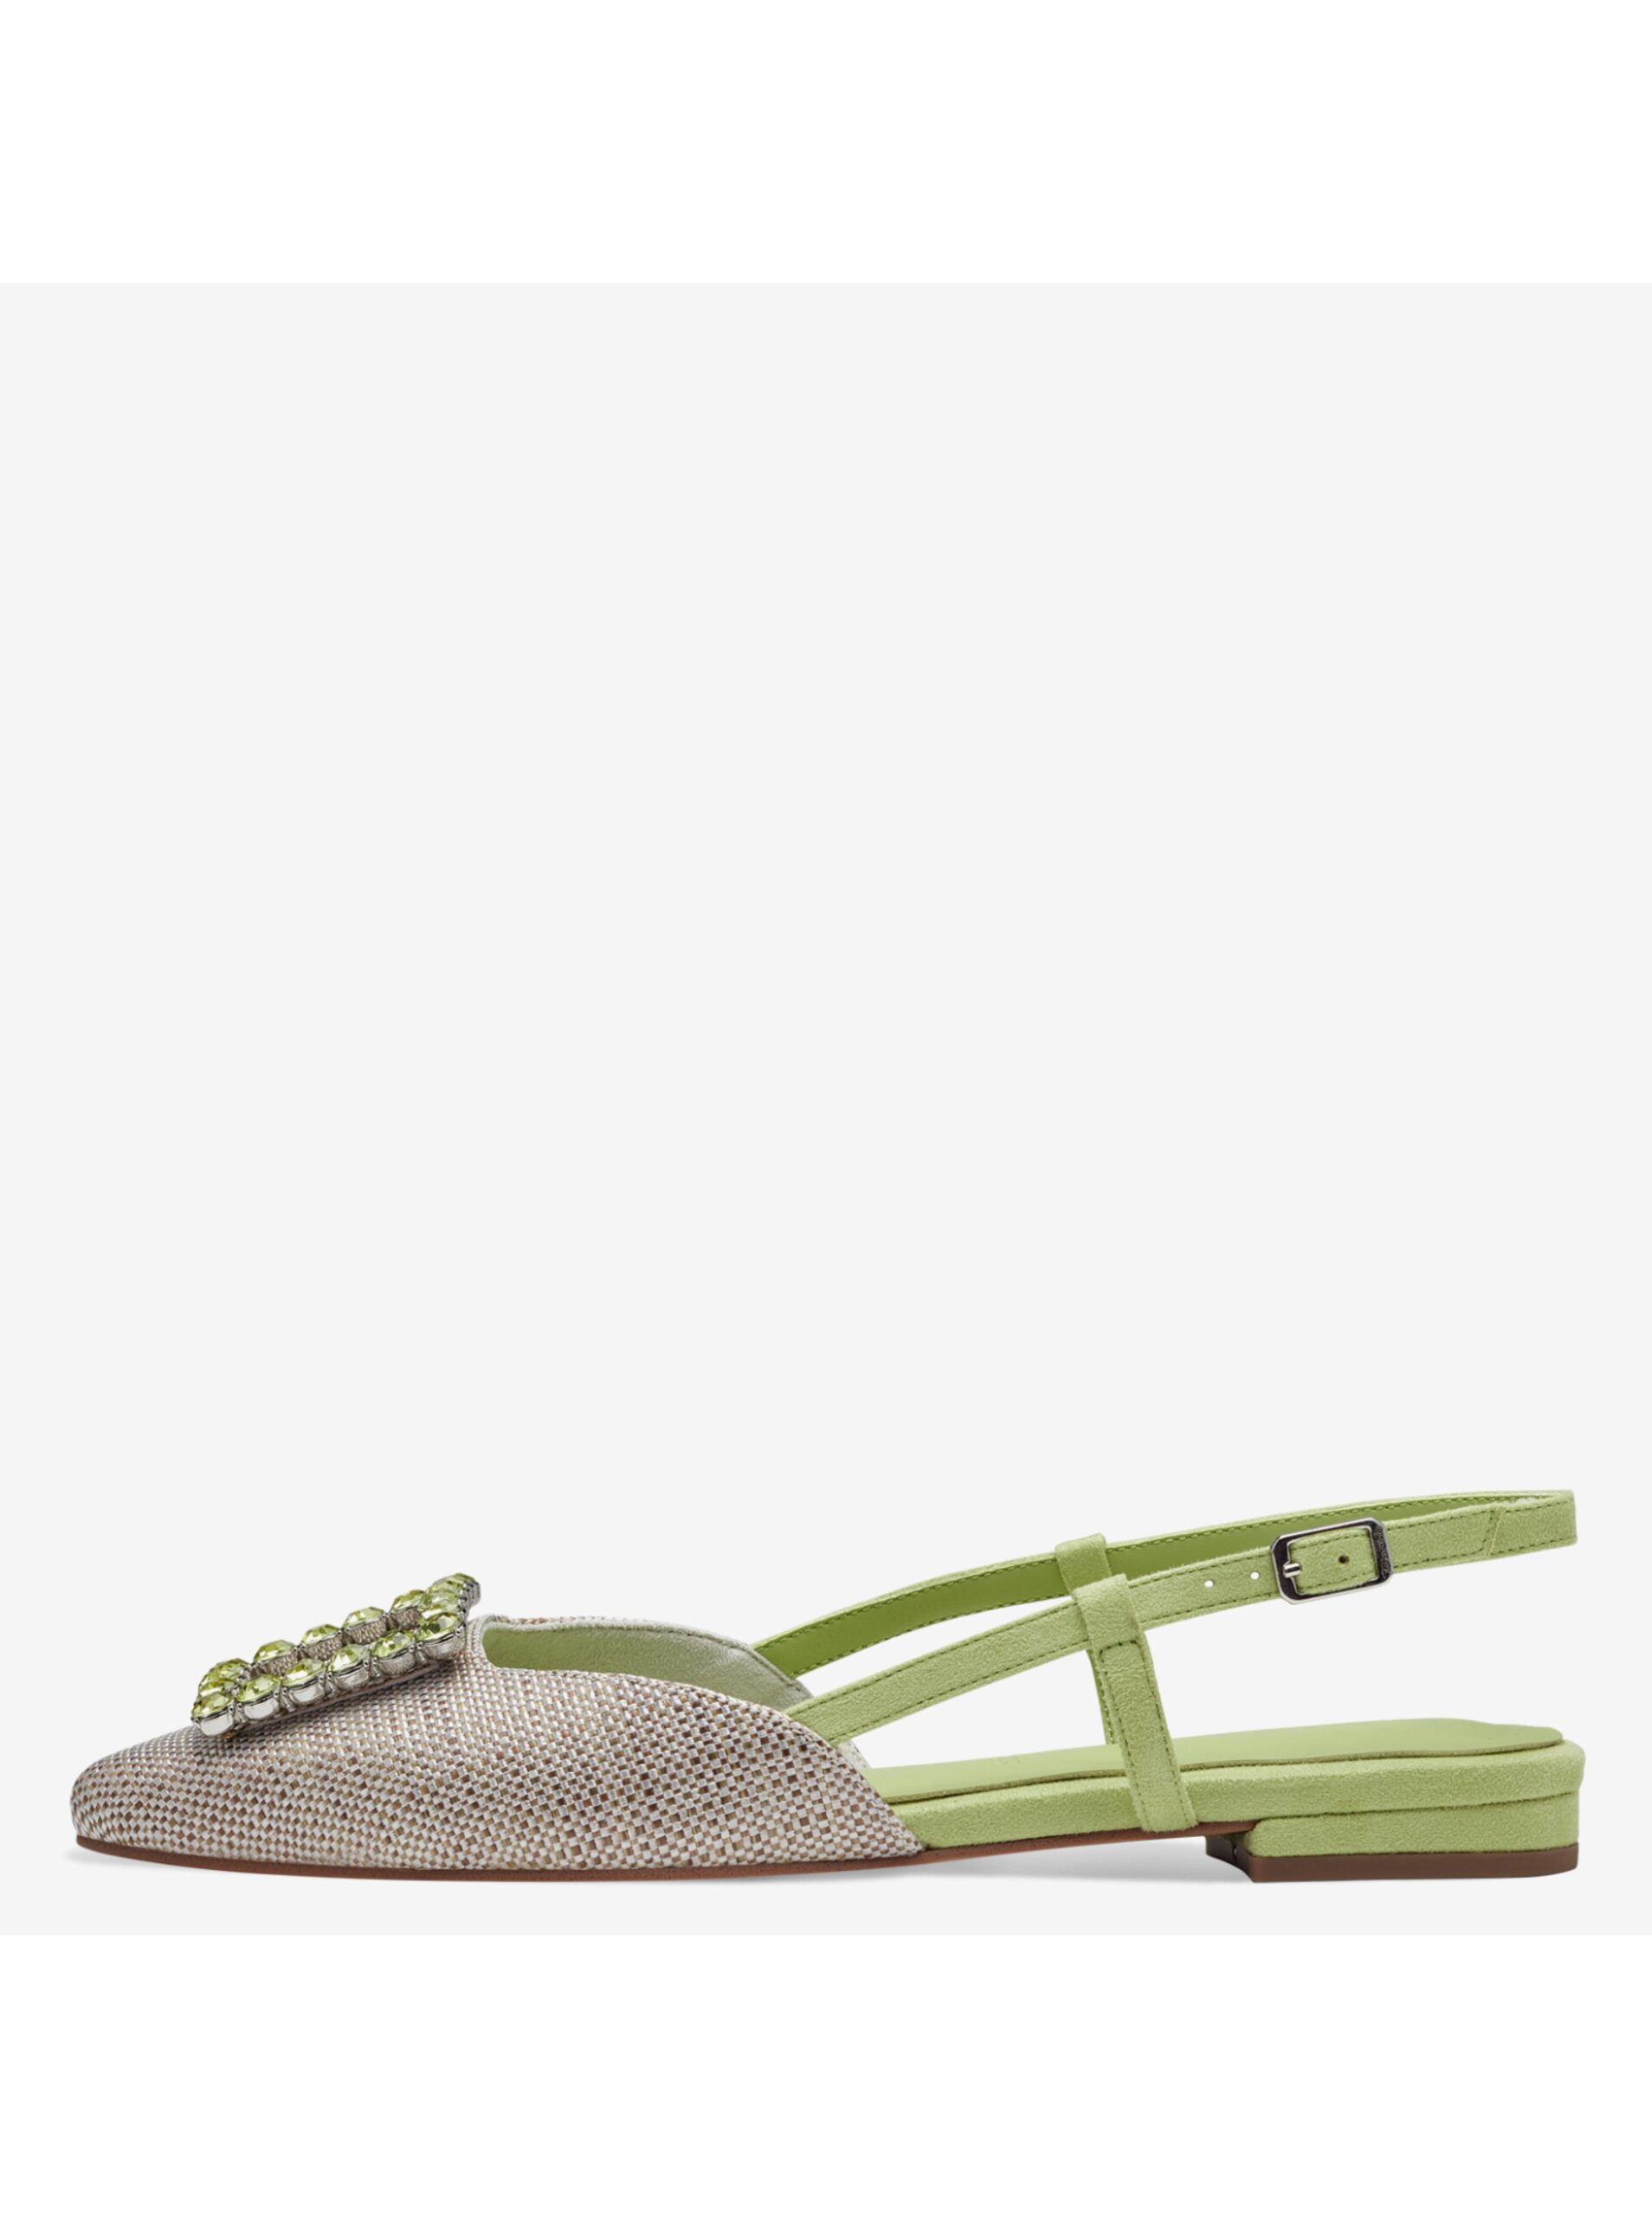 Tamaris women's sandals green and beige - Women